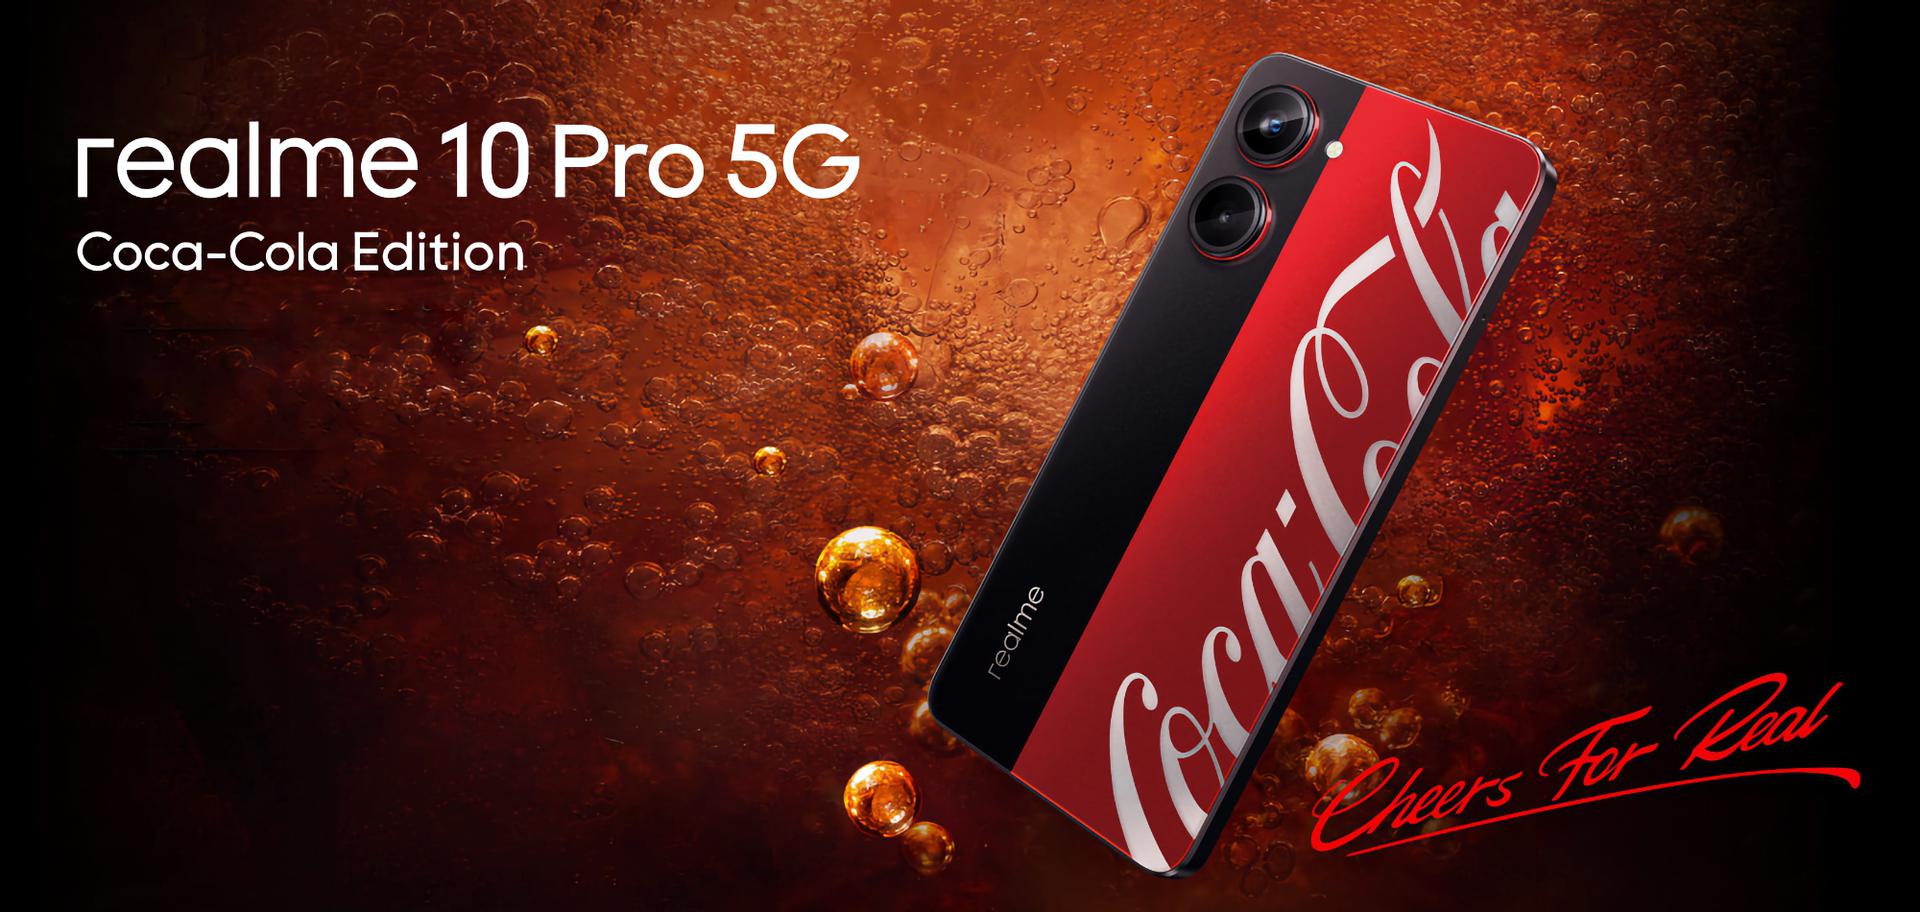 Insider ha mostrato un video del Realme 10 Pro 5G Coca Cola Edition: una versione speciale dello smartphone Realme 10 Pro 5G con schermo a 120Hz e chip Snapdragon 695.